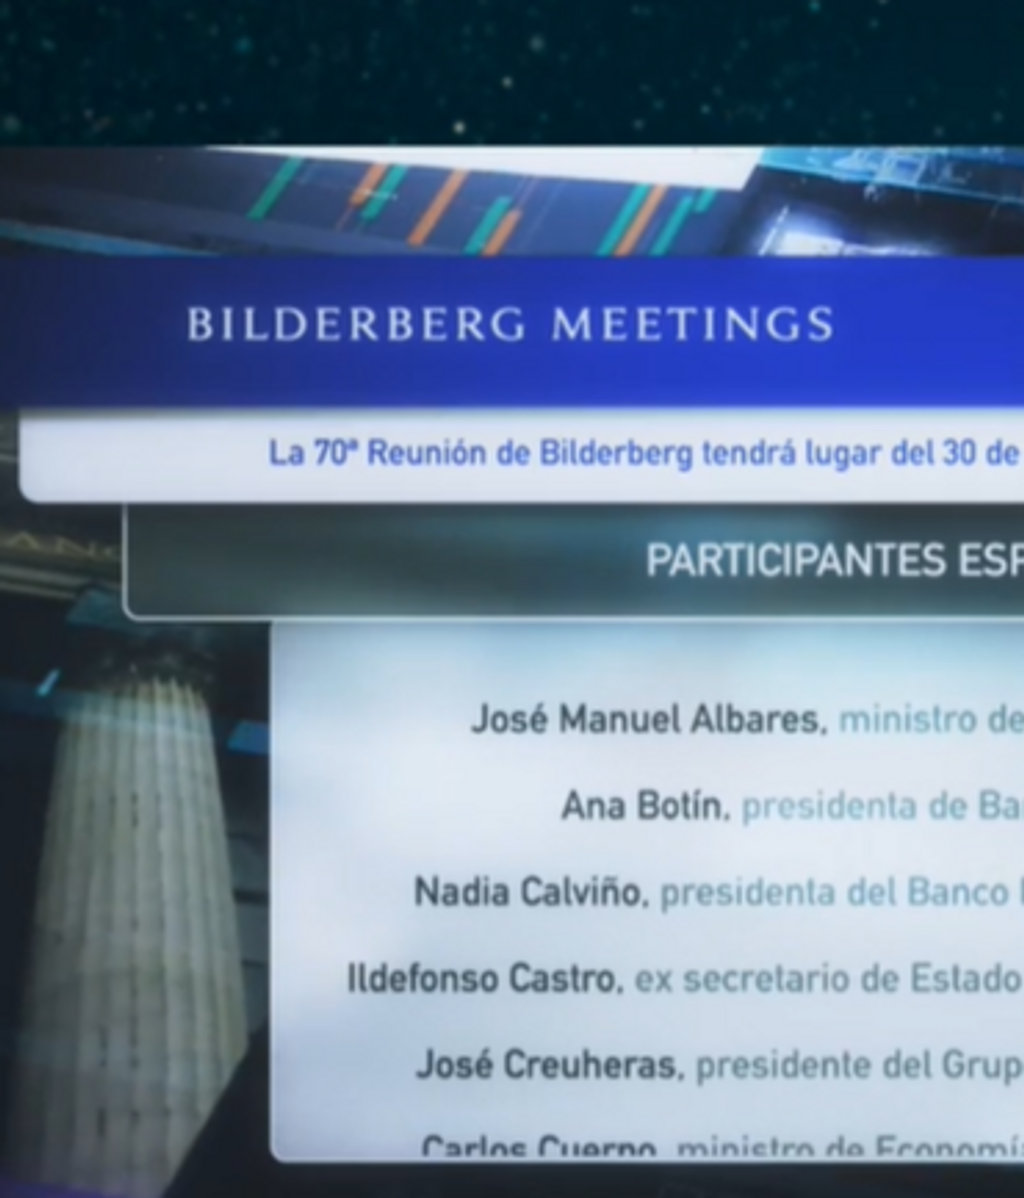 El Club Bilderberg está reunido en Madrid: temas clave y quién es quién en el encuentro de los más poderosos del mundo